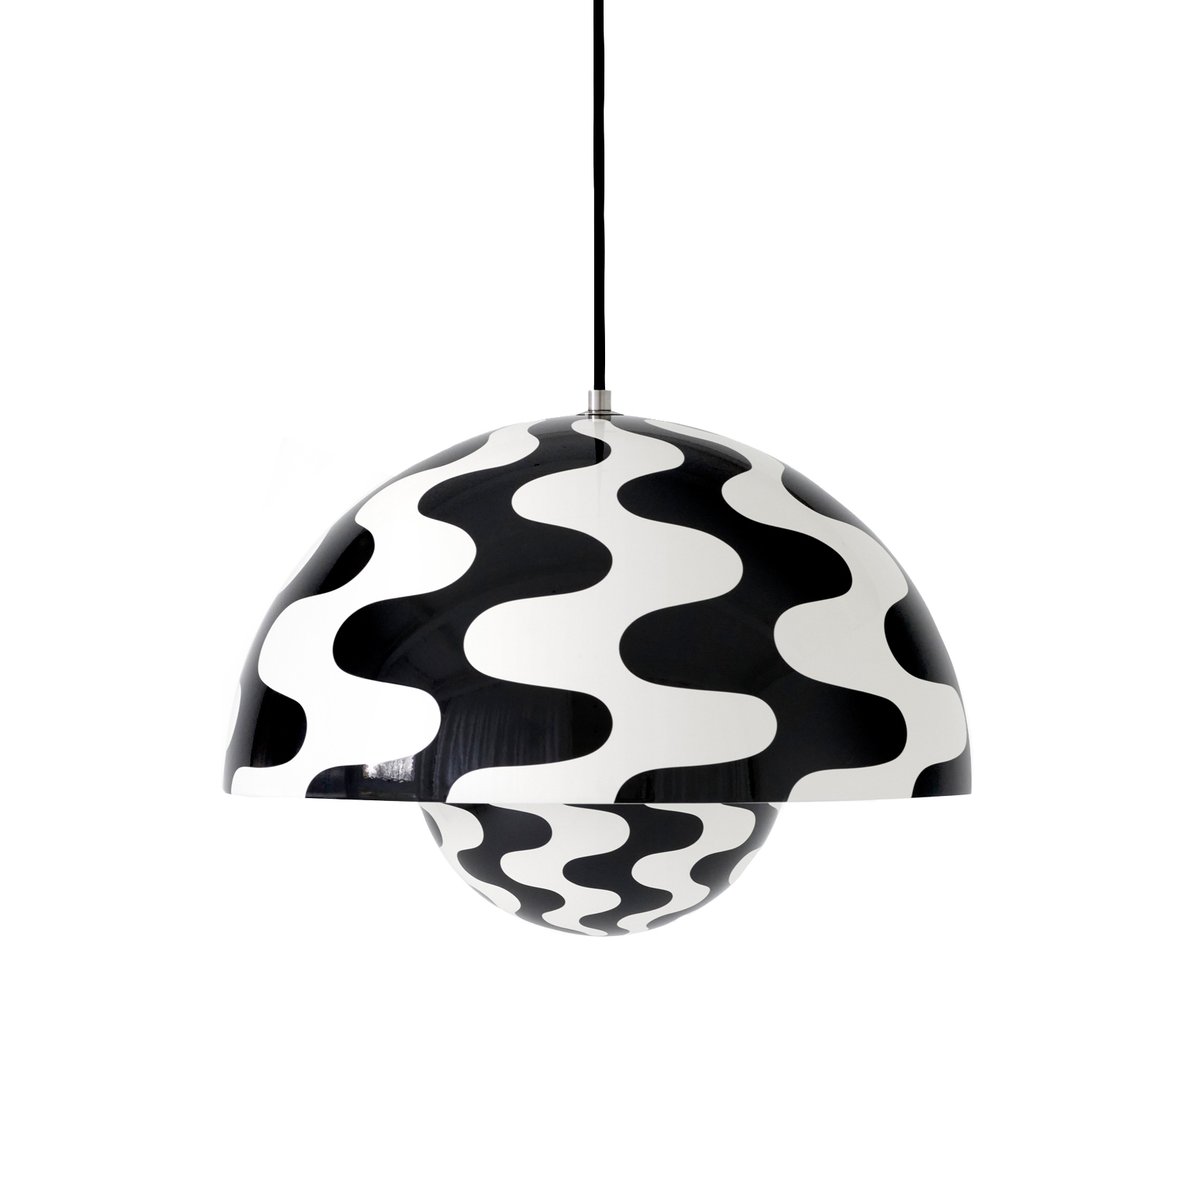 &Tradition Flowerpot hanglamp VP7 Black-white pattern